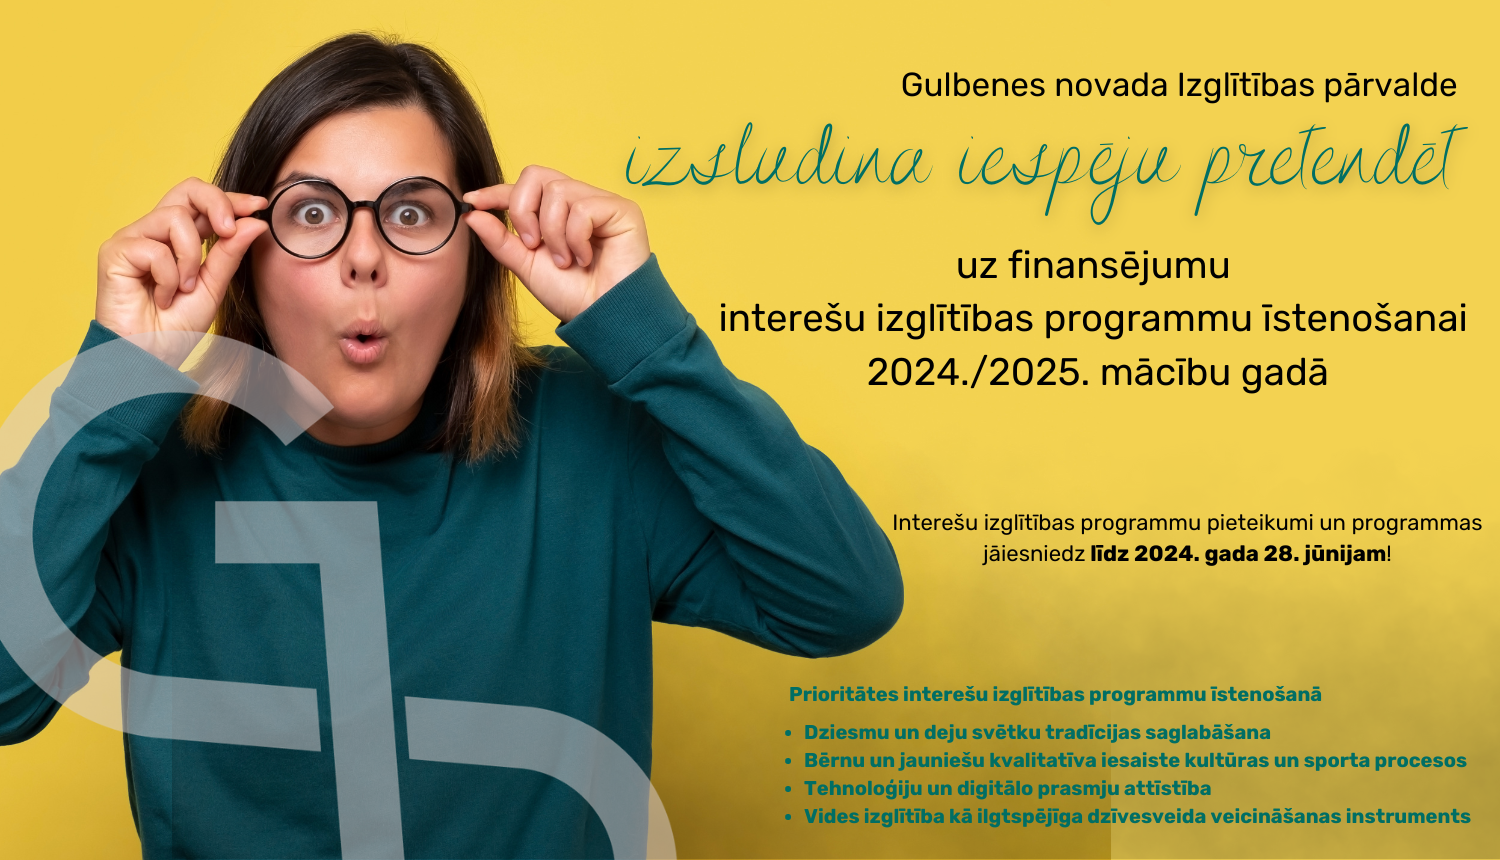 Gulbenes novada Izglītības pārvalde izsludina iespēju pretendēt uz finansējumu interešu izglītības programmu īstenošanai 2024./2025. mācību gadā